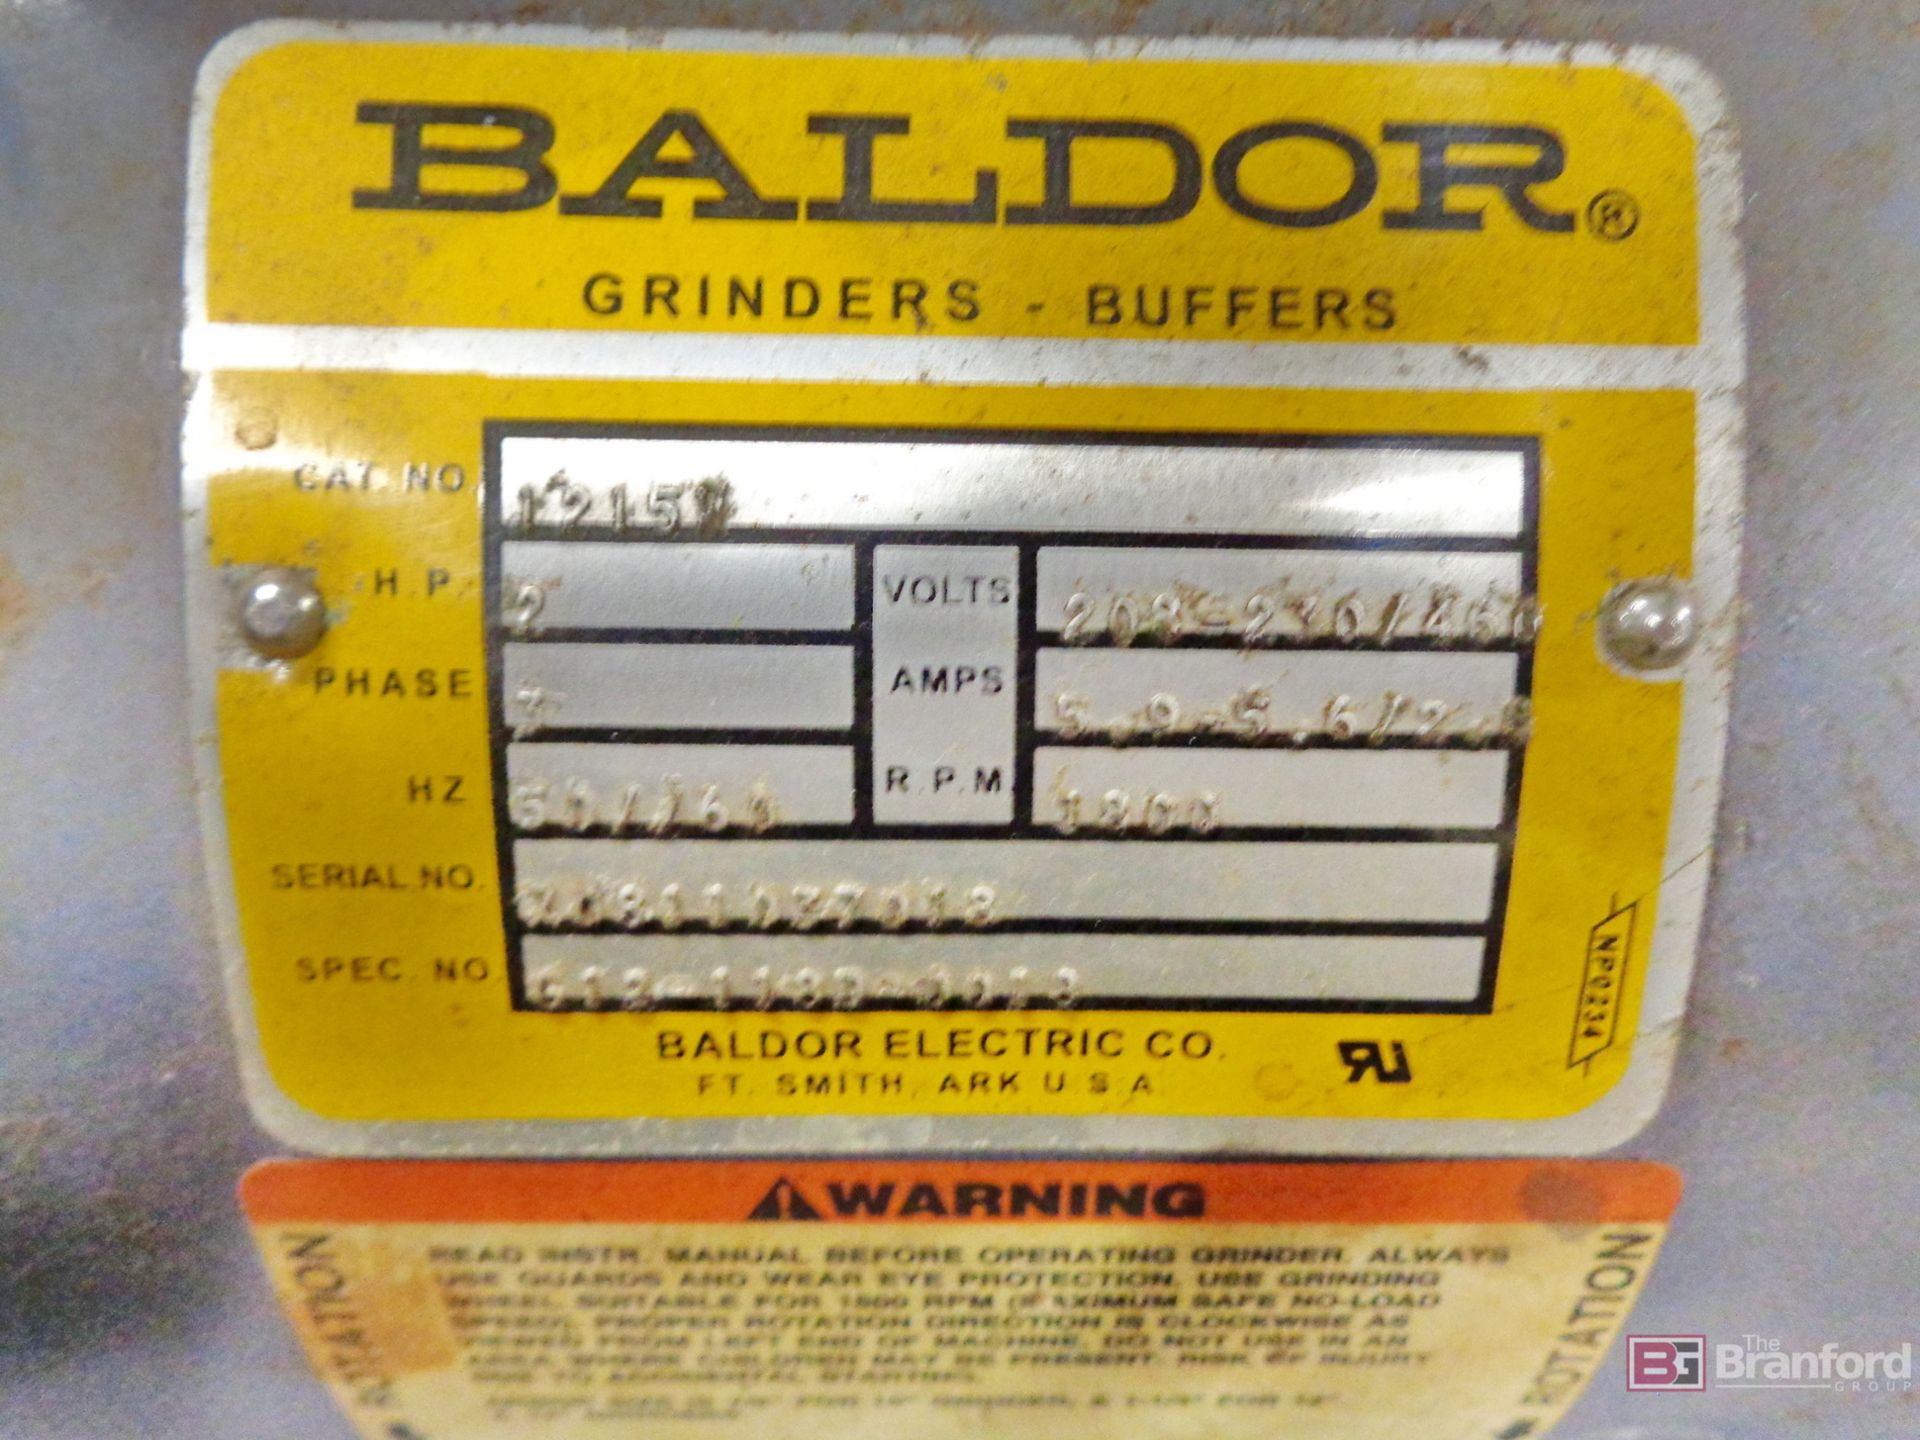 Baldor Cat# 1215 Double End Grinder - Image 2 of 2